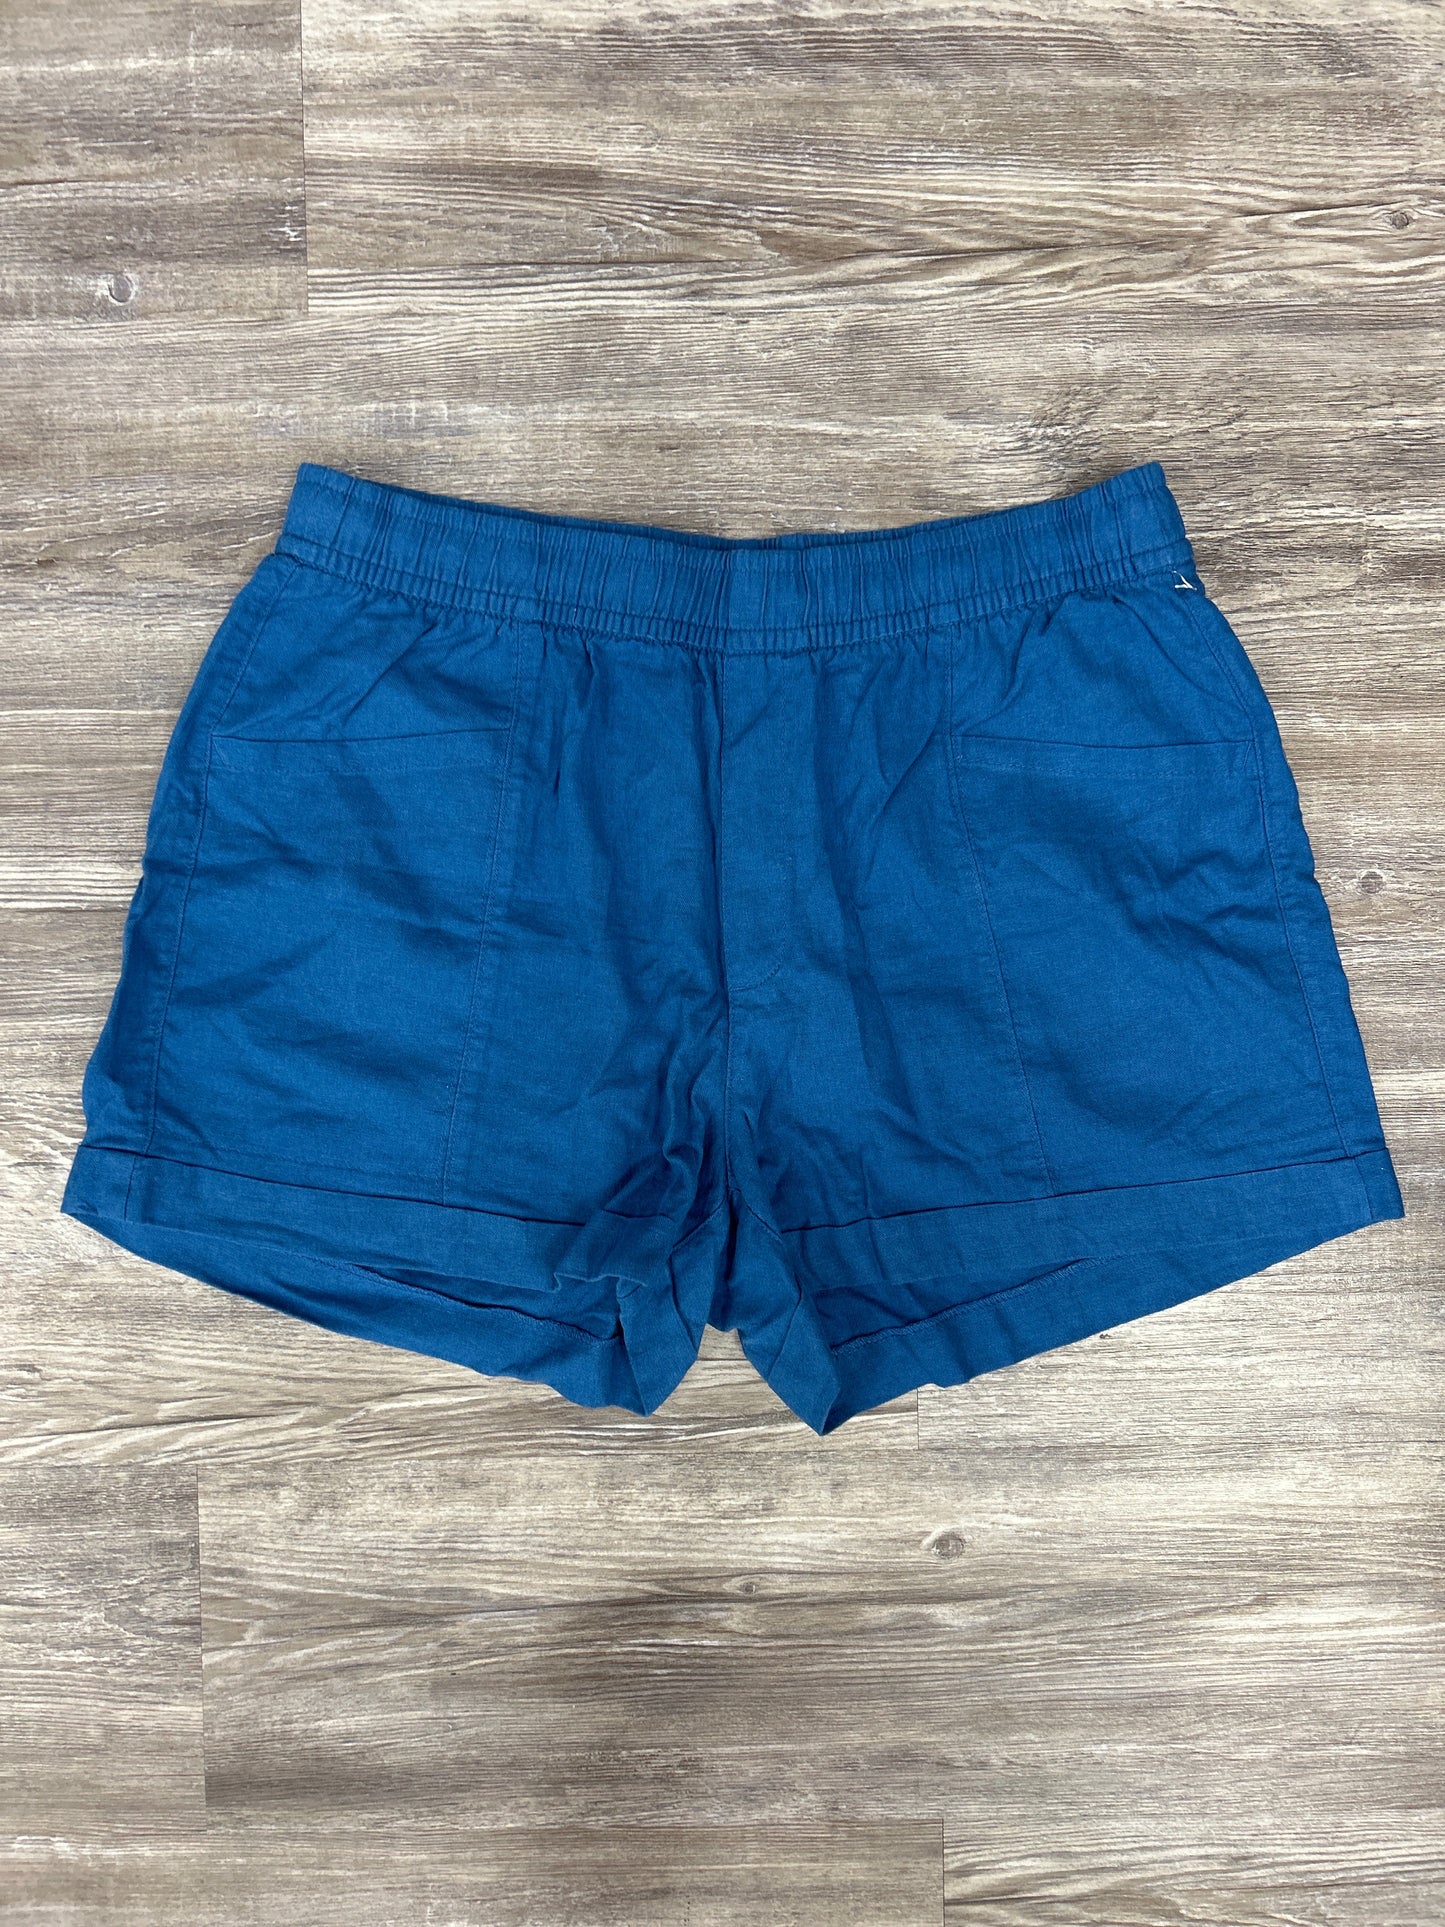 Blue Shorts Old Navy, Size L